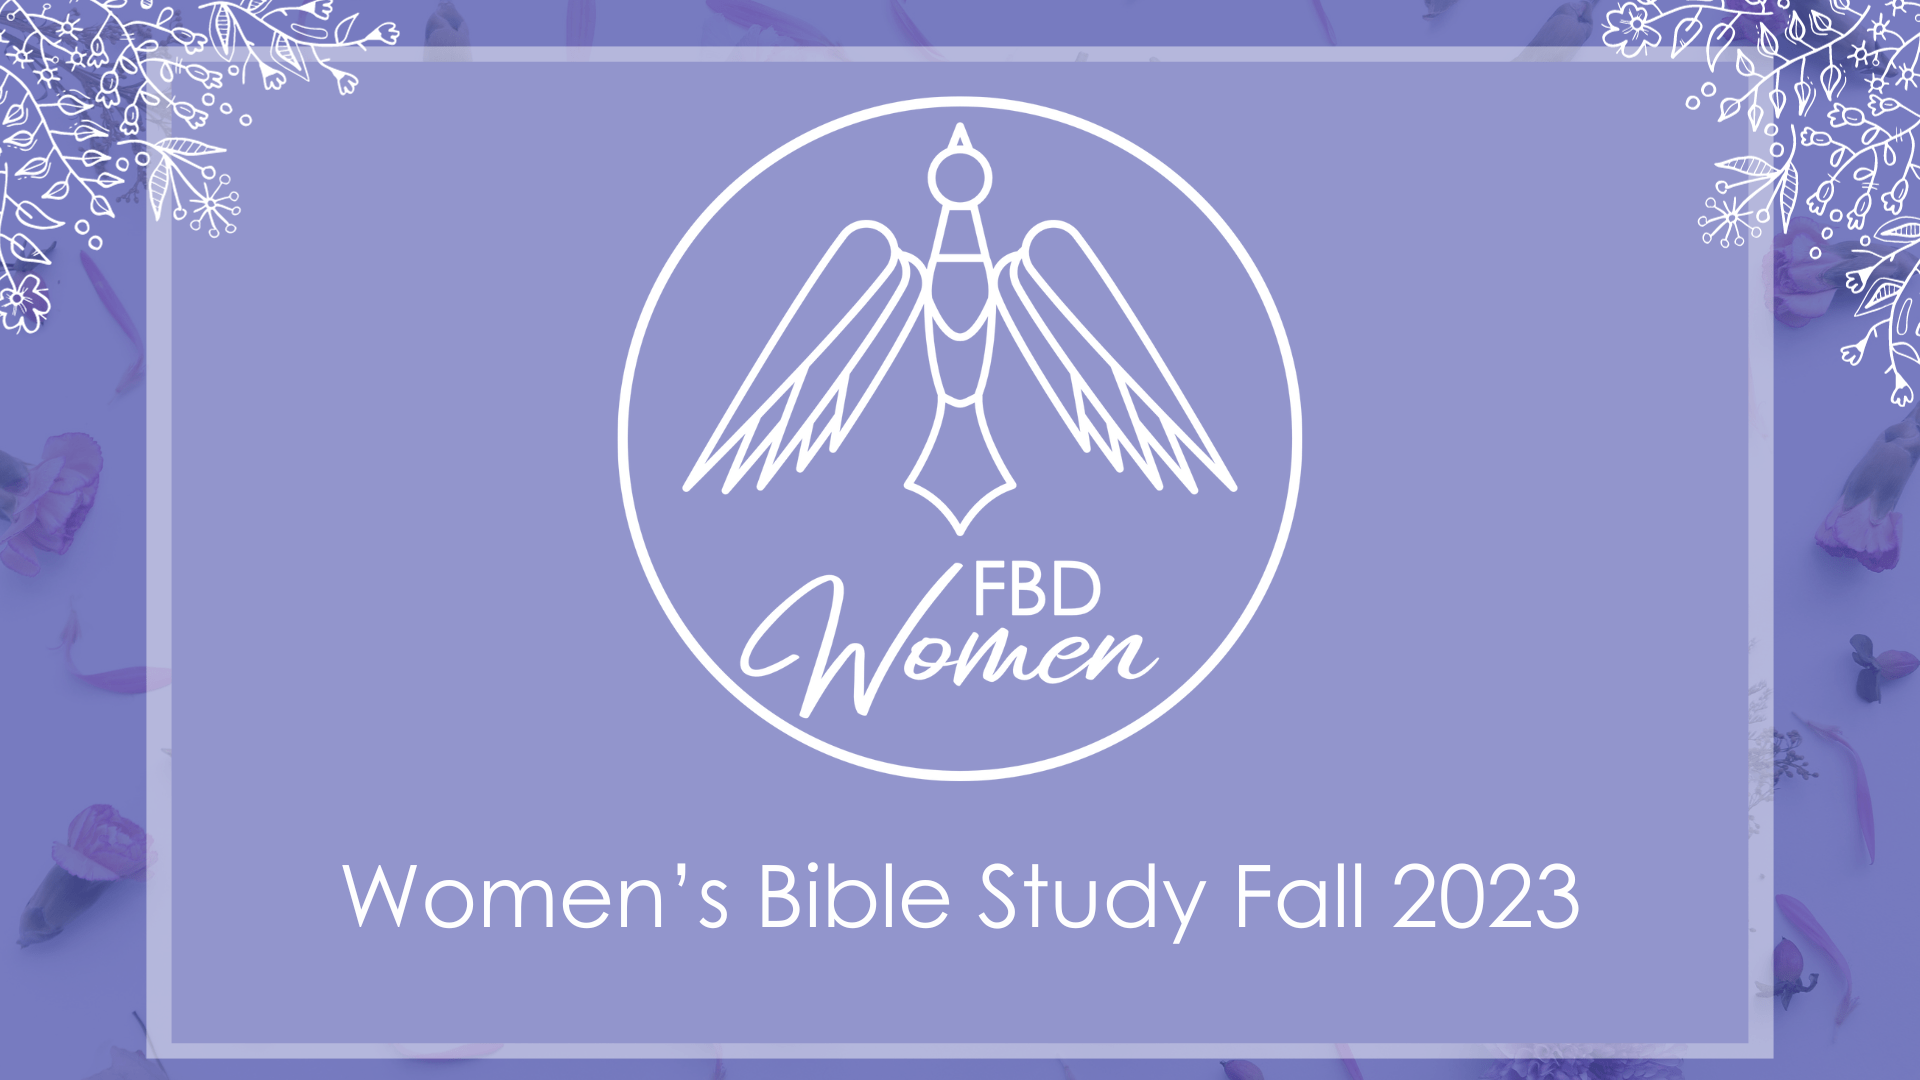 Women’s Bible Study Fall 2023: End of Fall Teaching on John